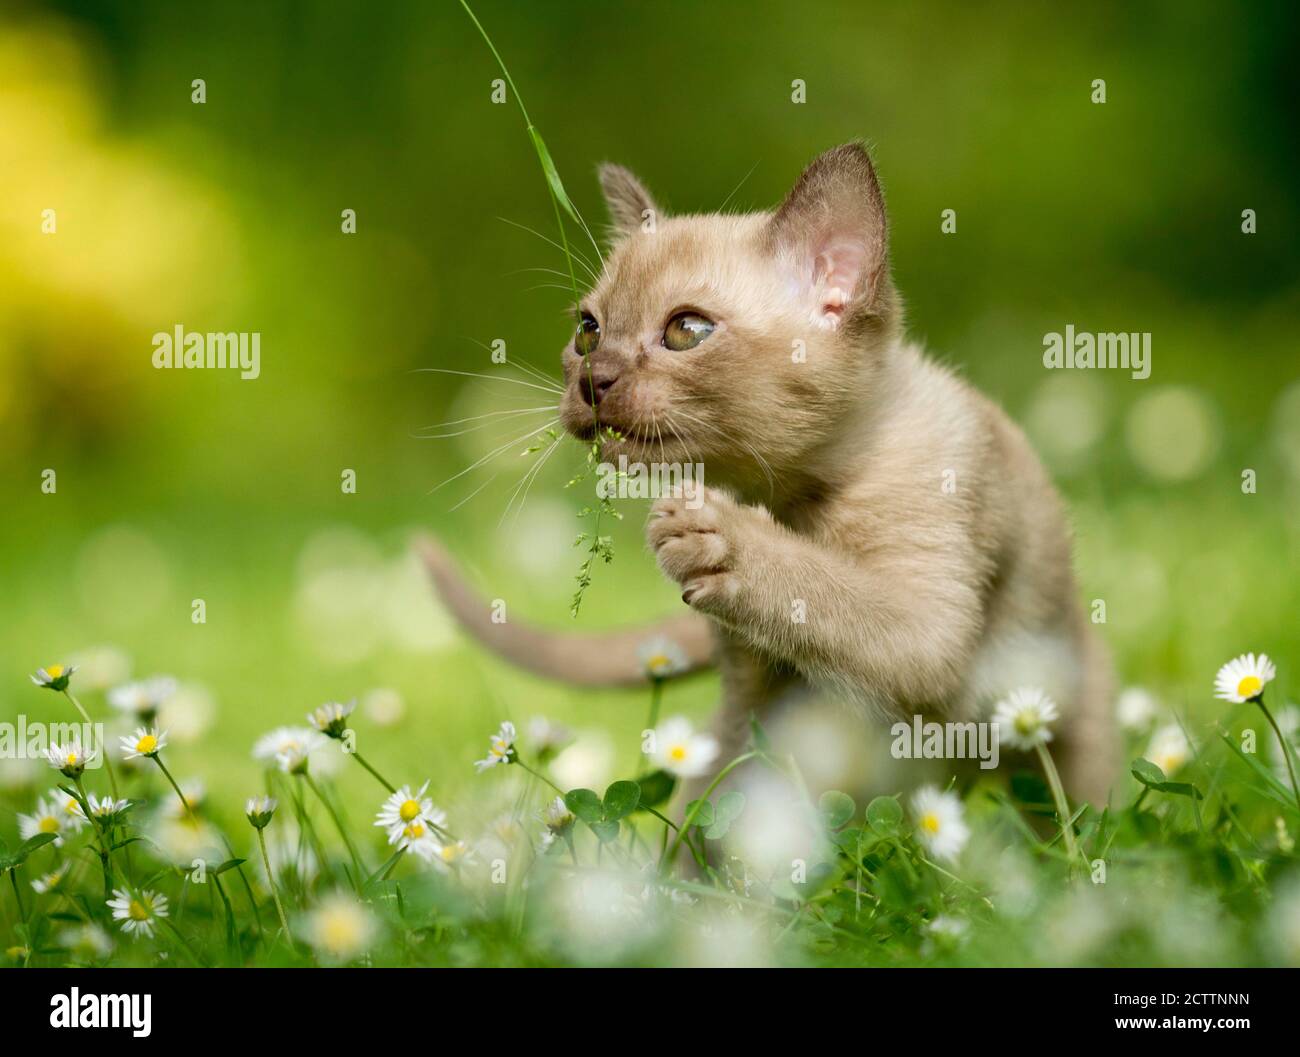 Gato birmano. Gatito jugando con hierba Foto de stock